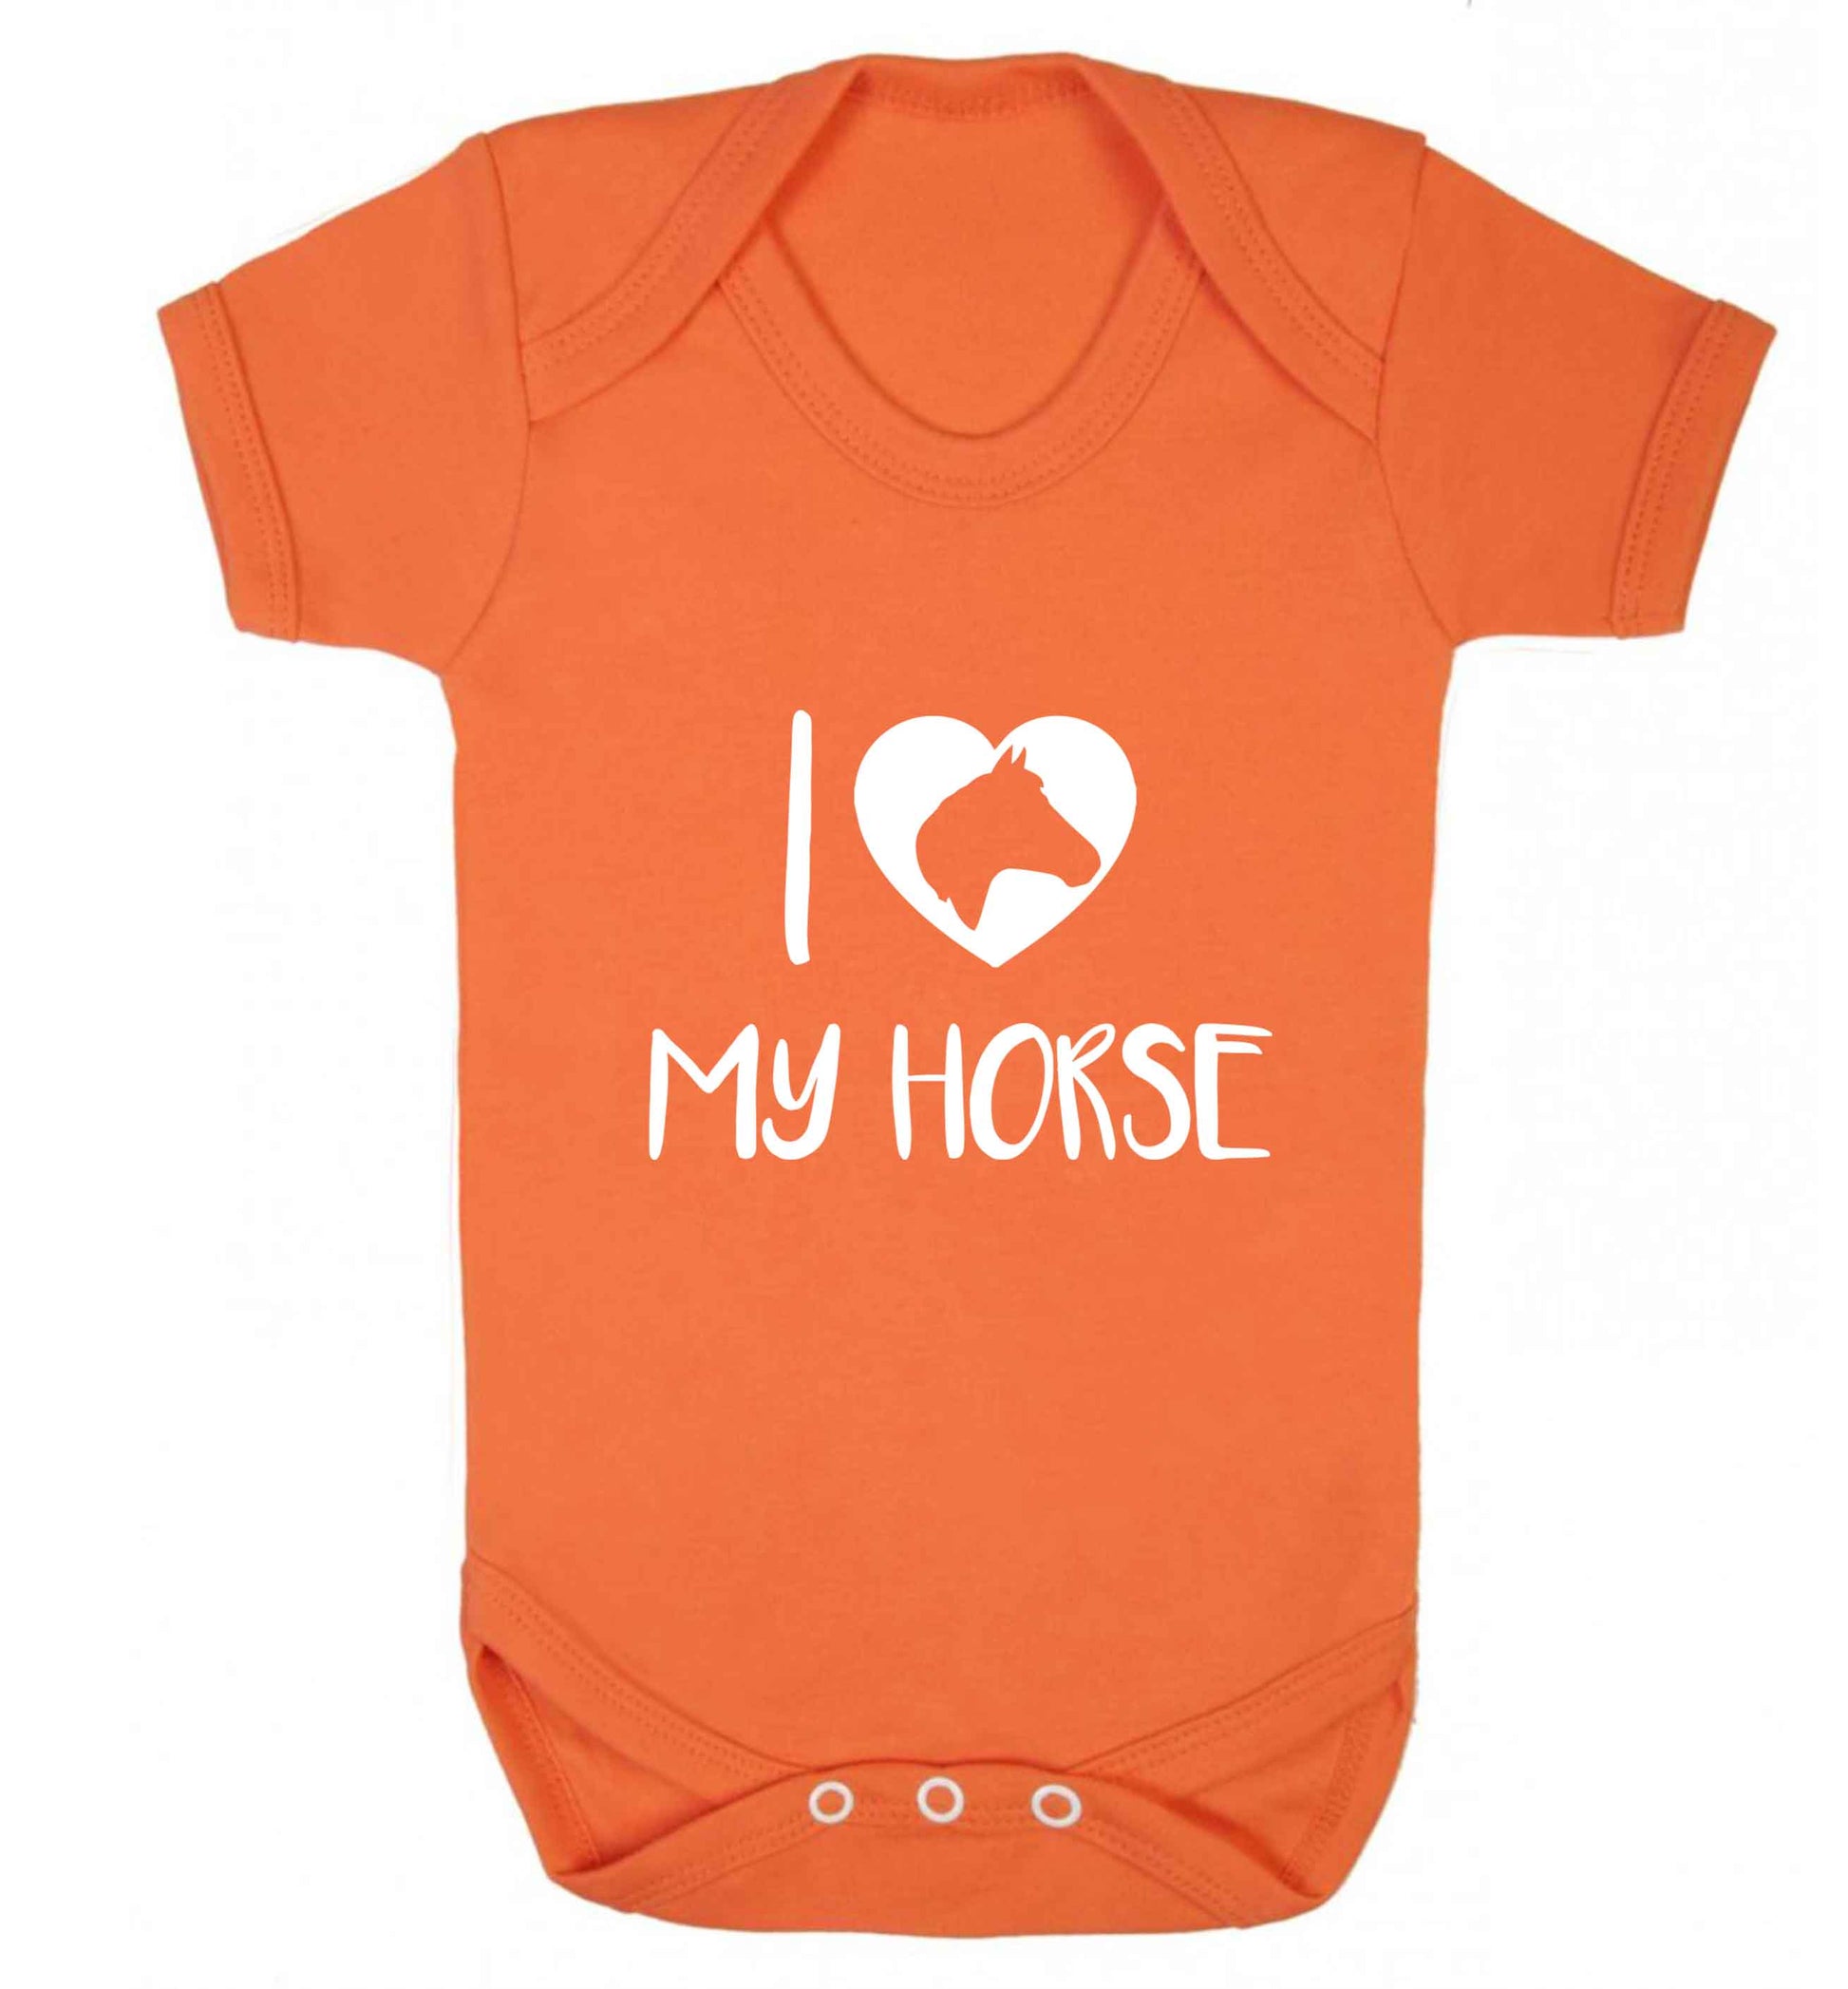 I love my horse baby vest orange 18-24 months